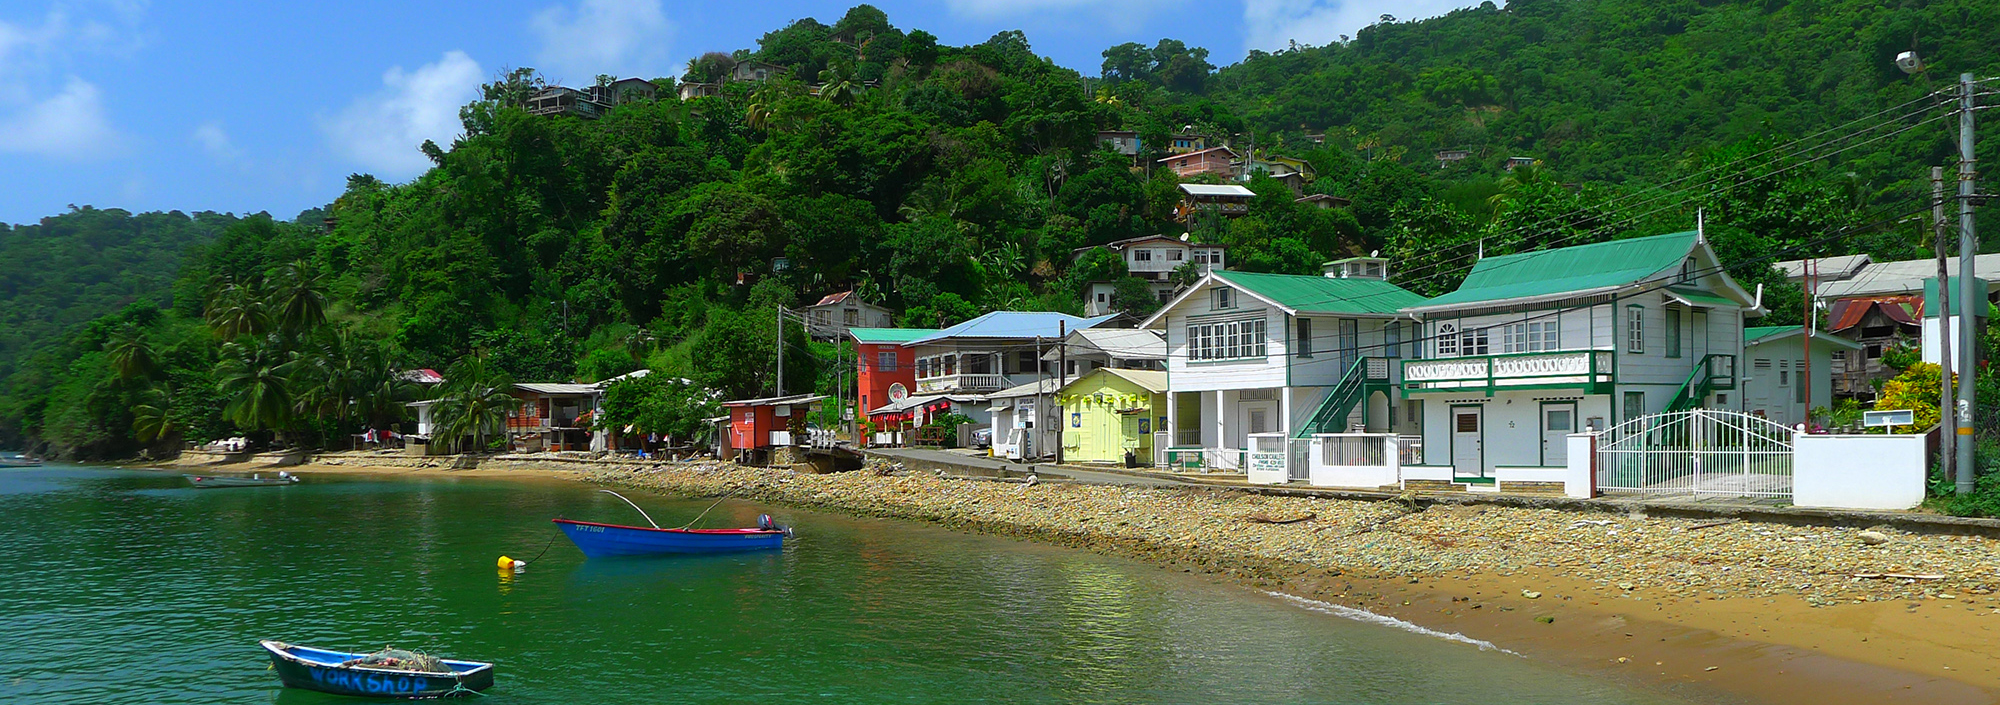 Kleiner Ort Charlotteville auf Tobago am Meer mit Fischerbooten und Holzhäusern